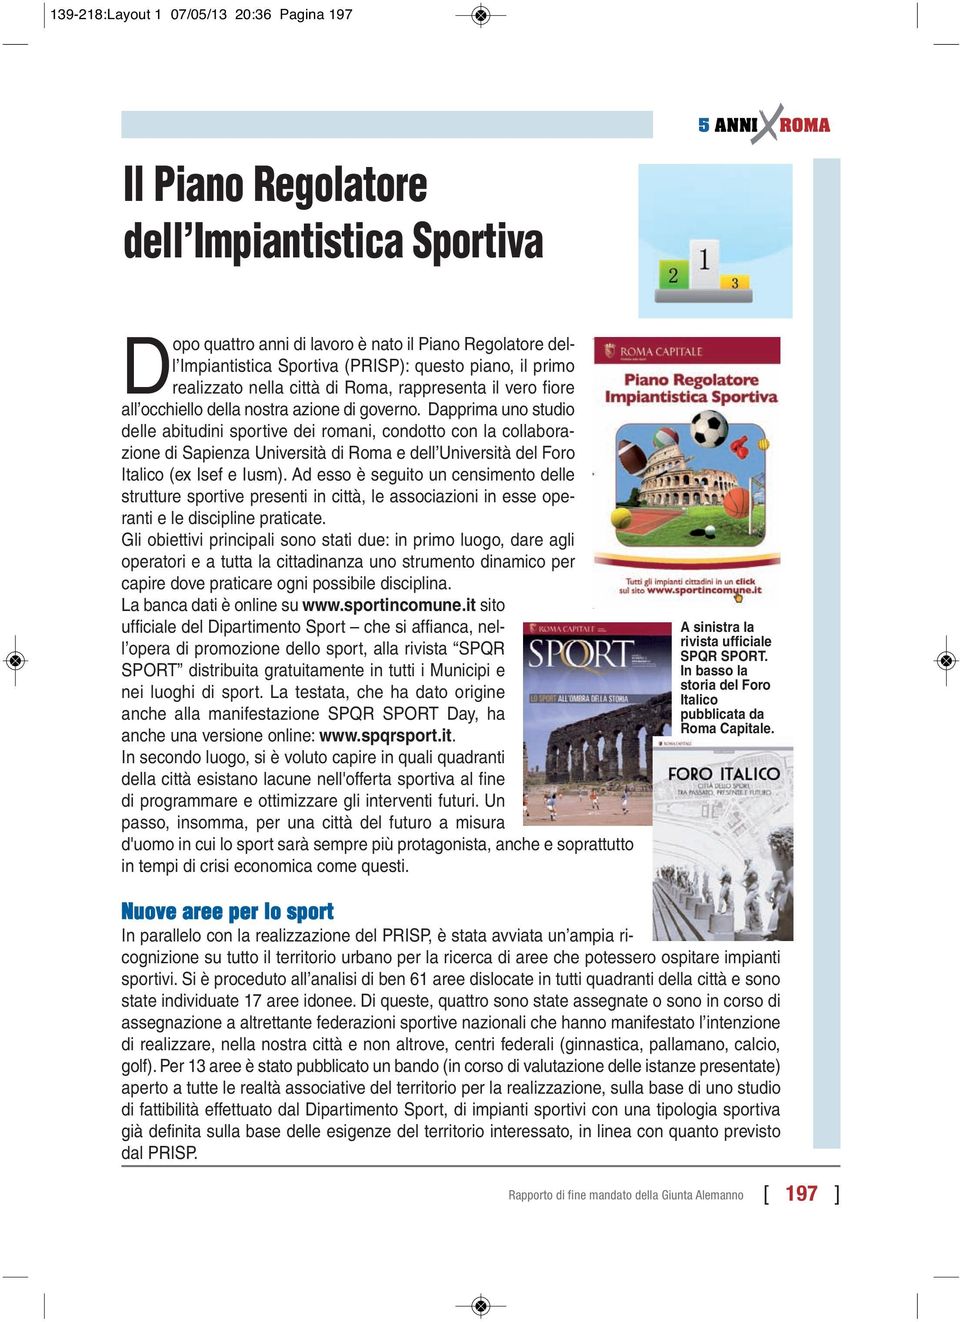 Dapprima uno studio delle abitudini sportive dei romani, condotto con la collaborazione di Sapienza Università di Roma e dell Università del Foro Italico (ex Isef e Iusm).